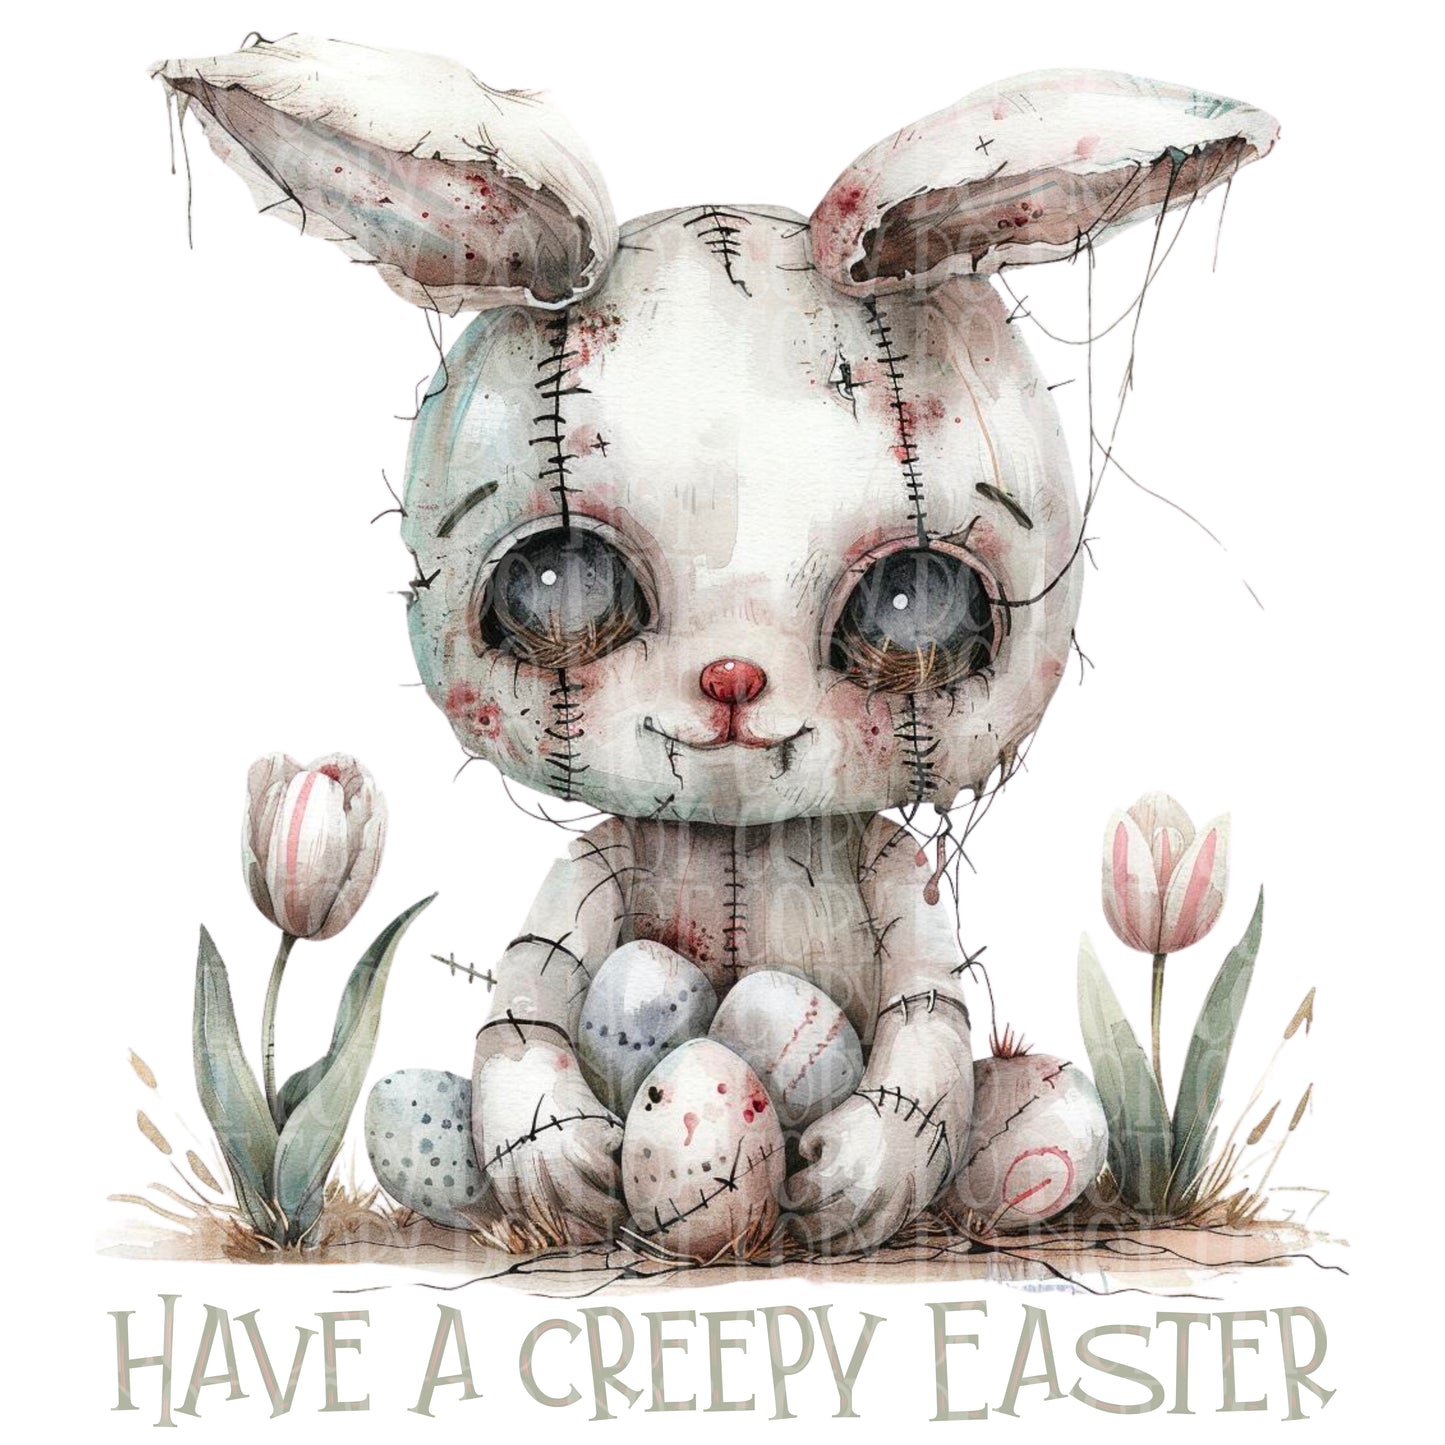 Voodoo Easter Bundle